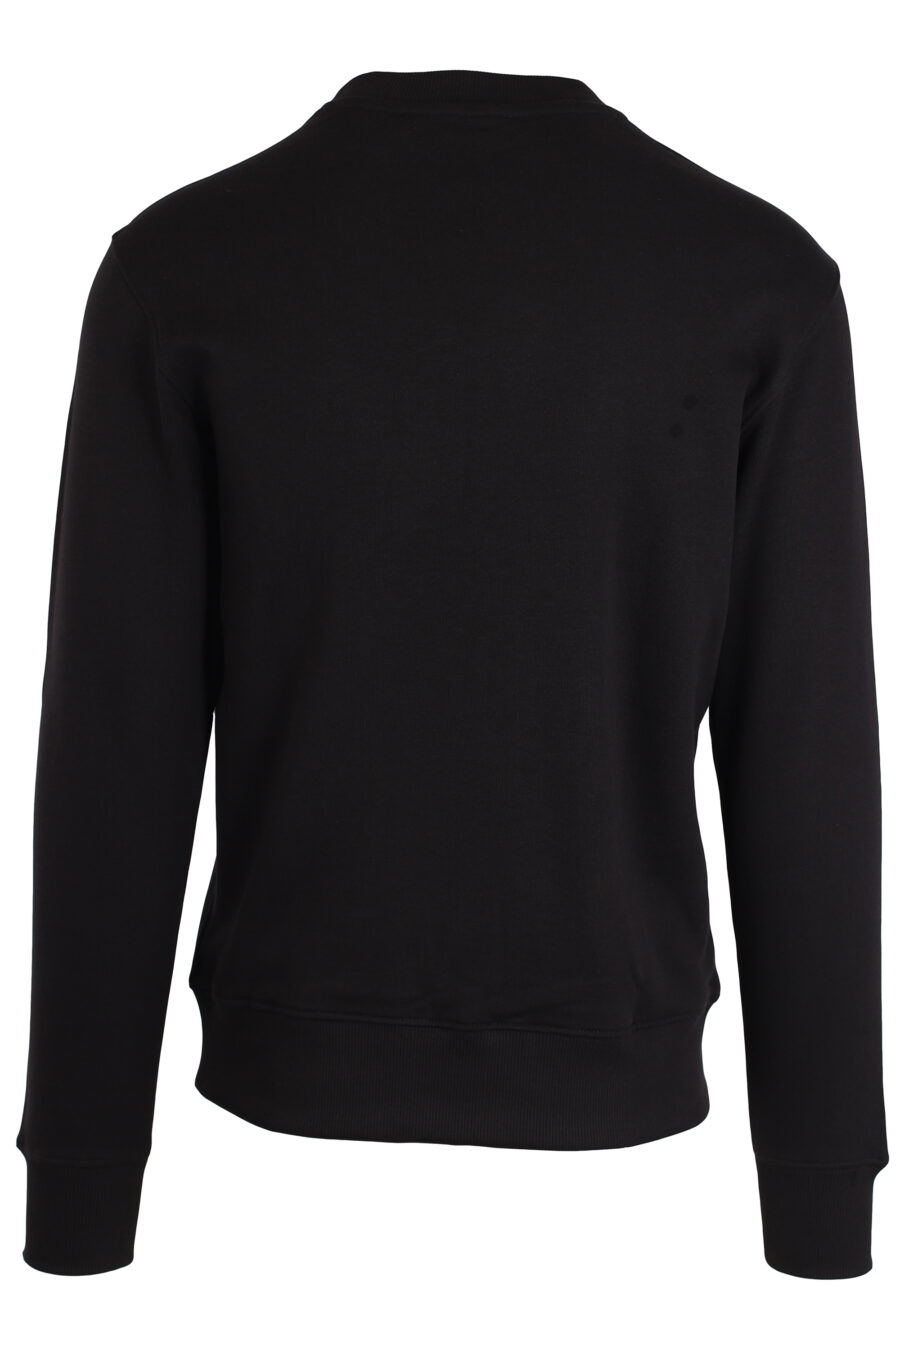 Schwarzes Sweatshirt mit kleinem runden silbernen Logo - IMG 3983